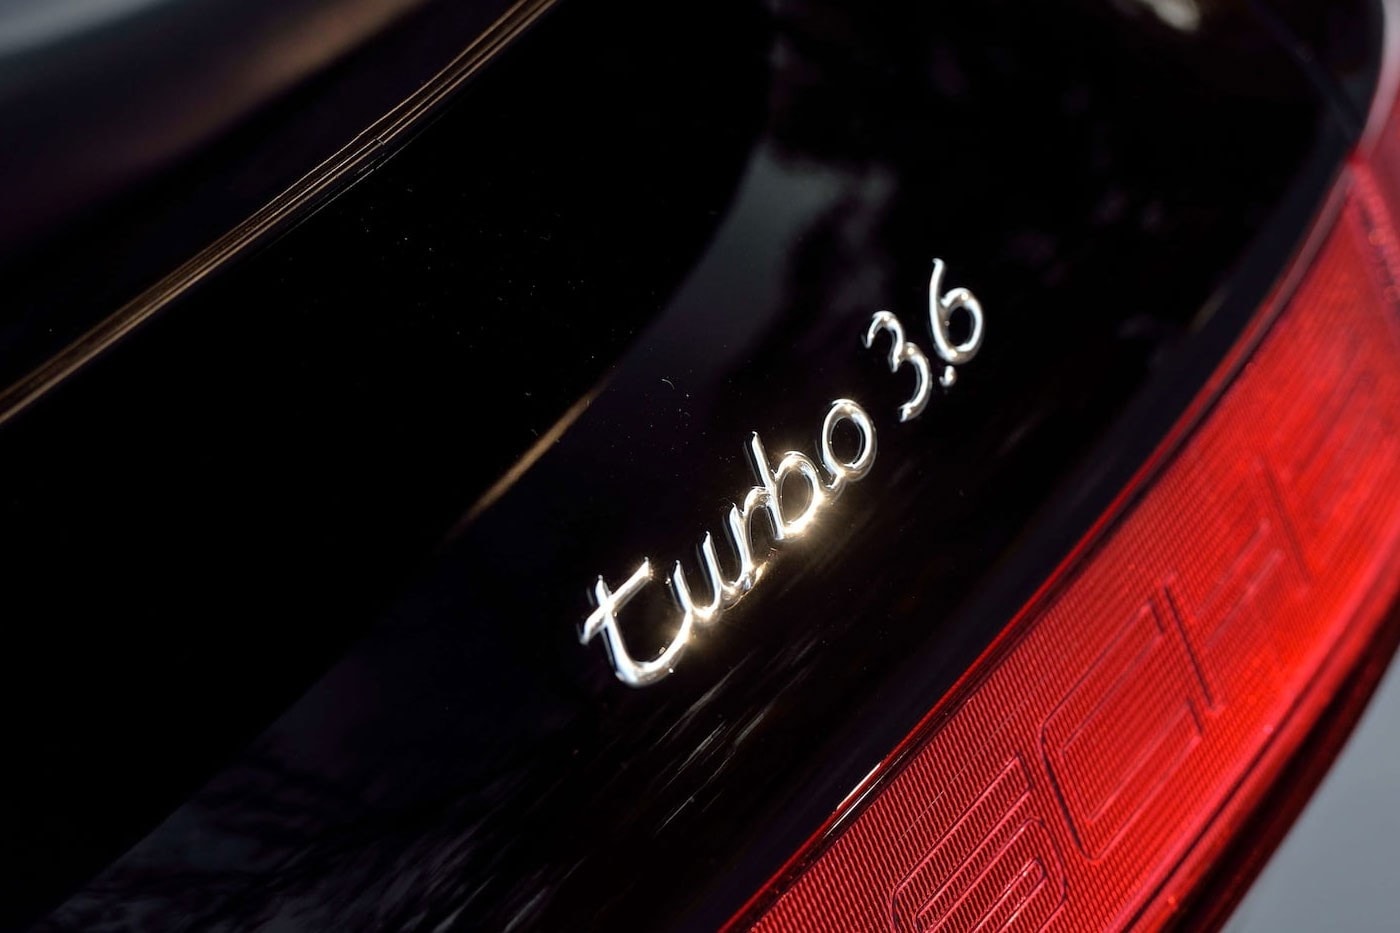 電影《Bad Boys》經典 1994 Porsche 911 Turbo 即將展開拍賣